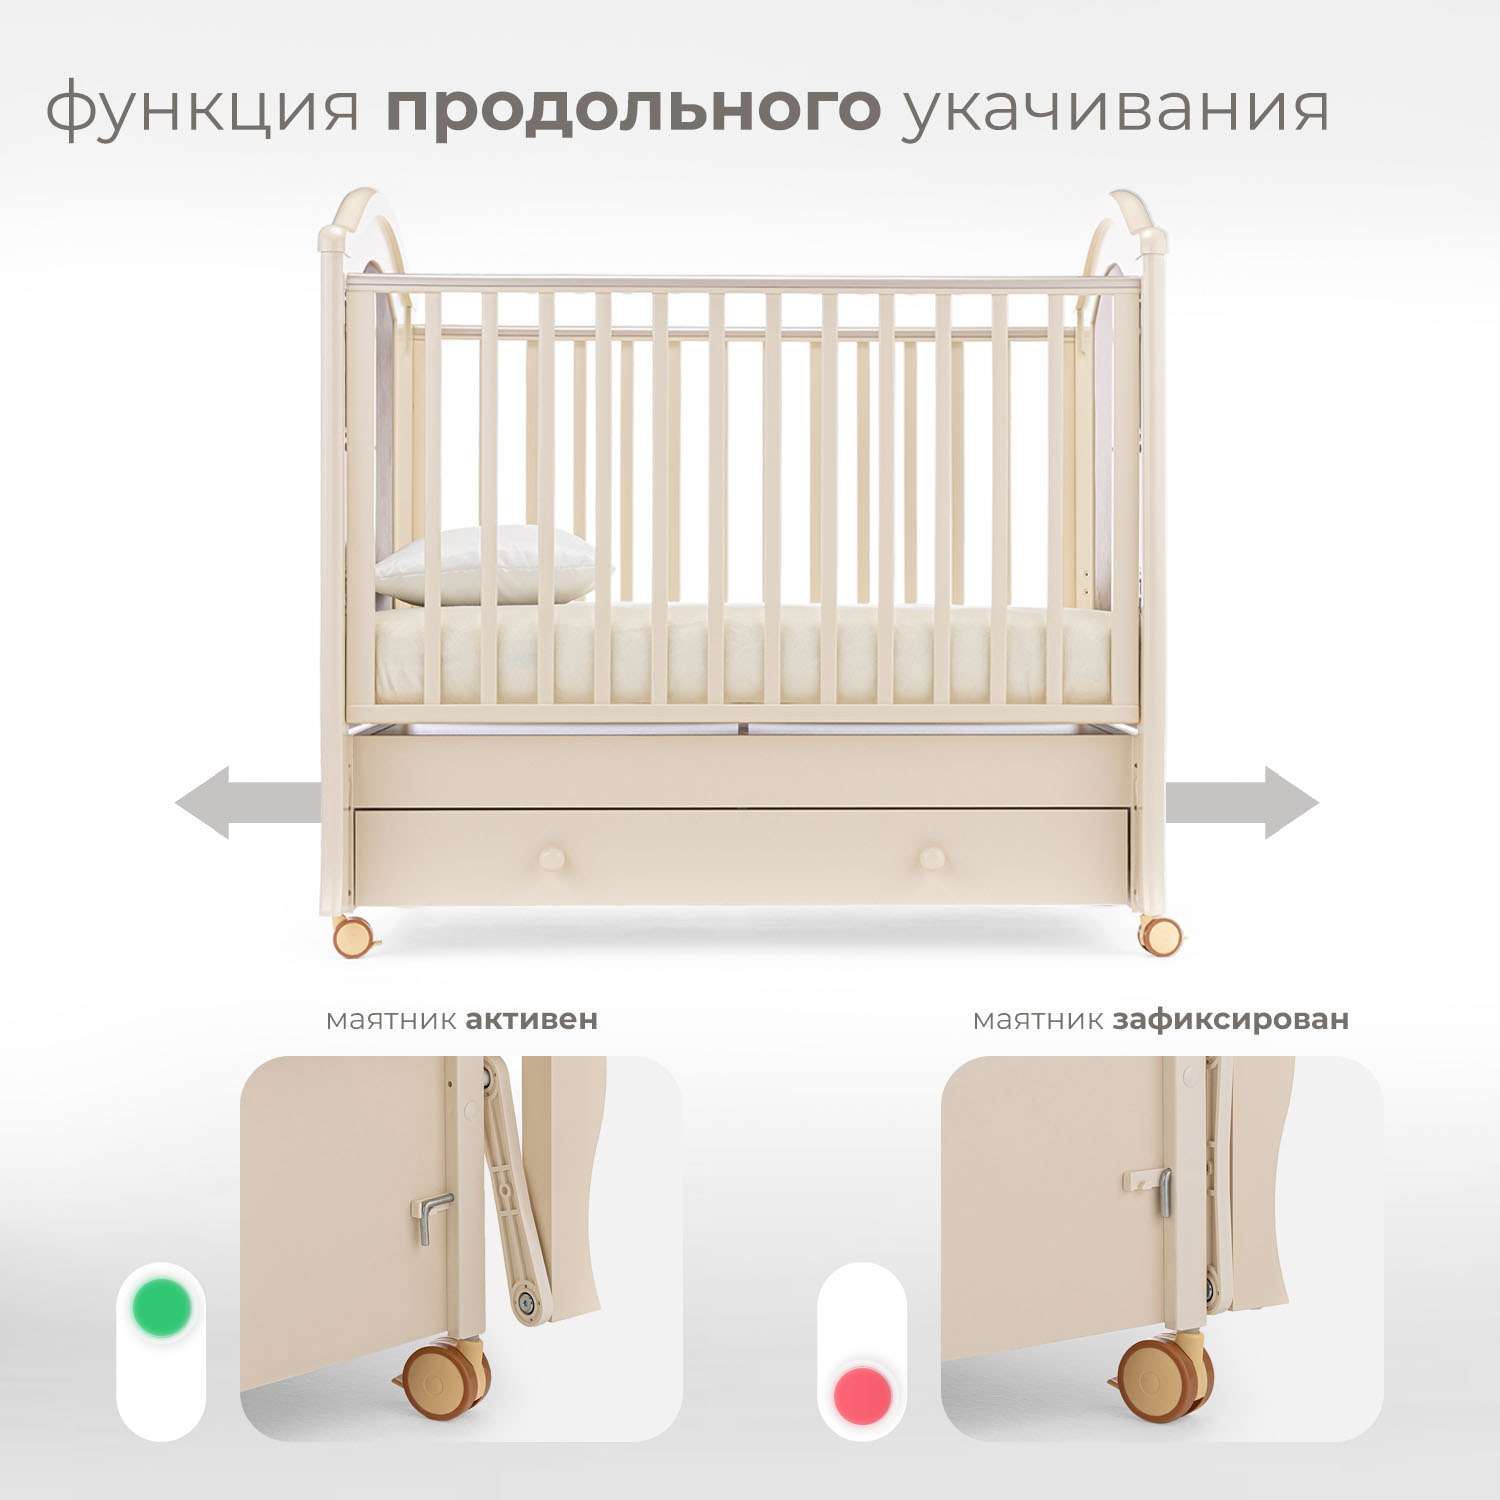 Детская кроватка Nuovita Grazia Swing прямоугольная, продольный маятник (слоновая кость) - фото 4